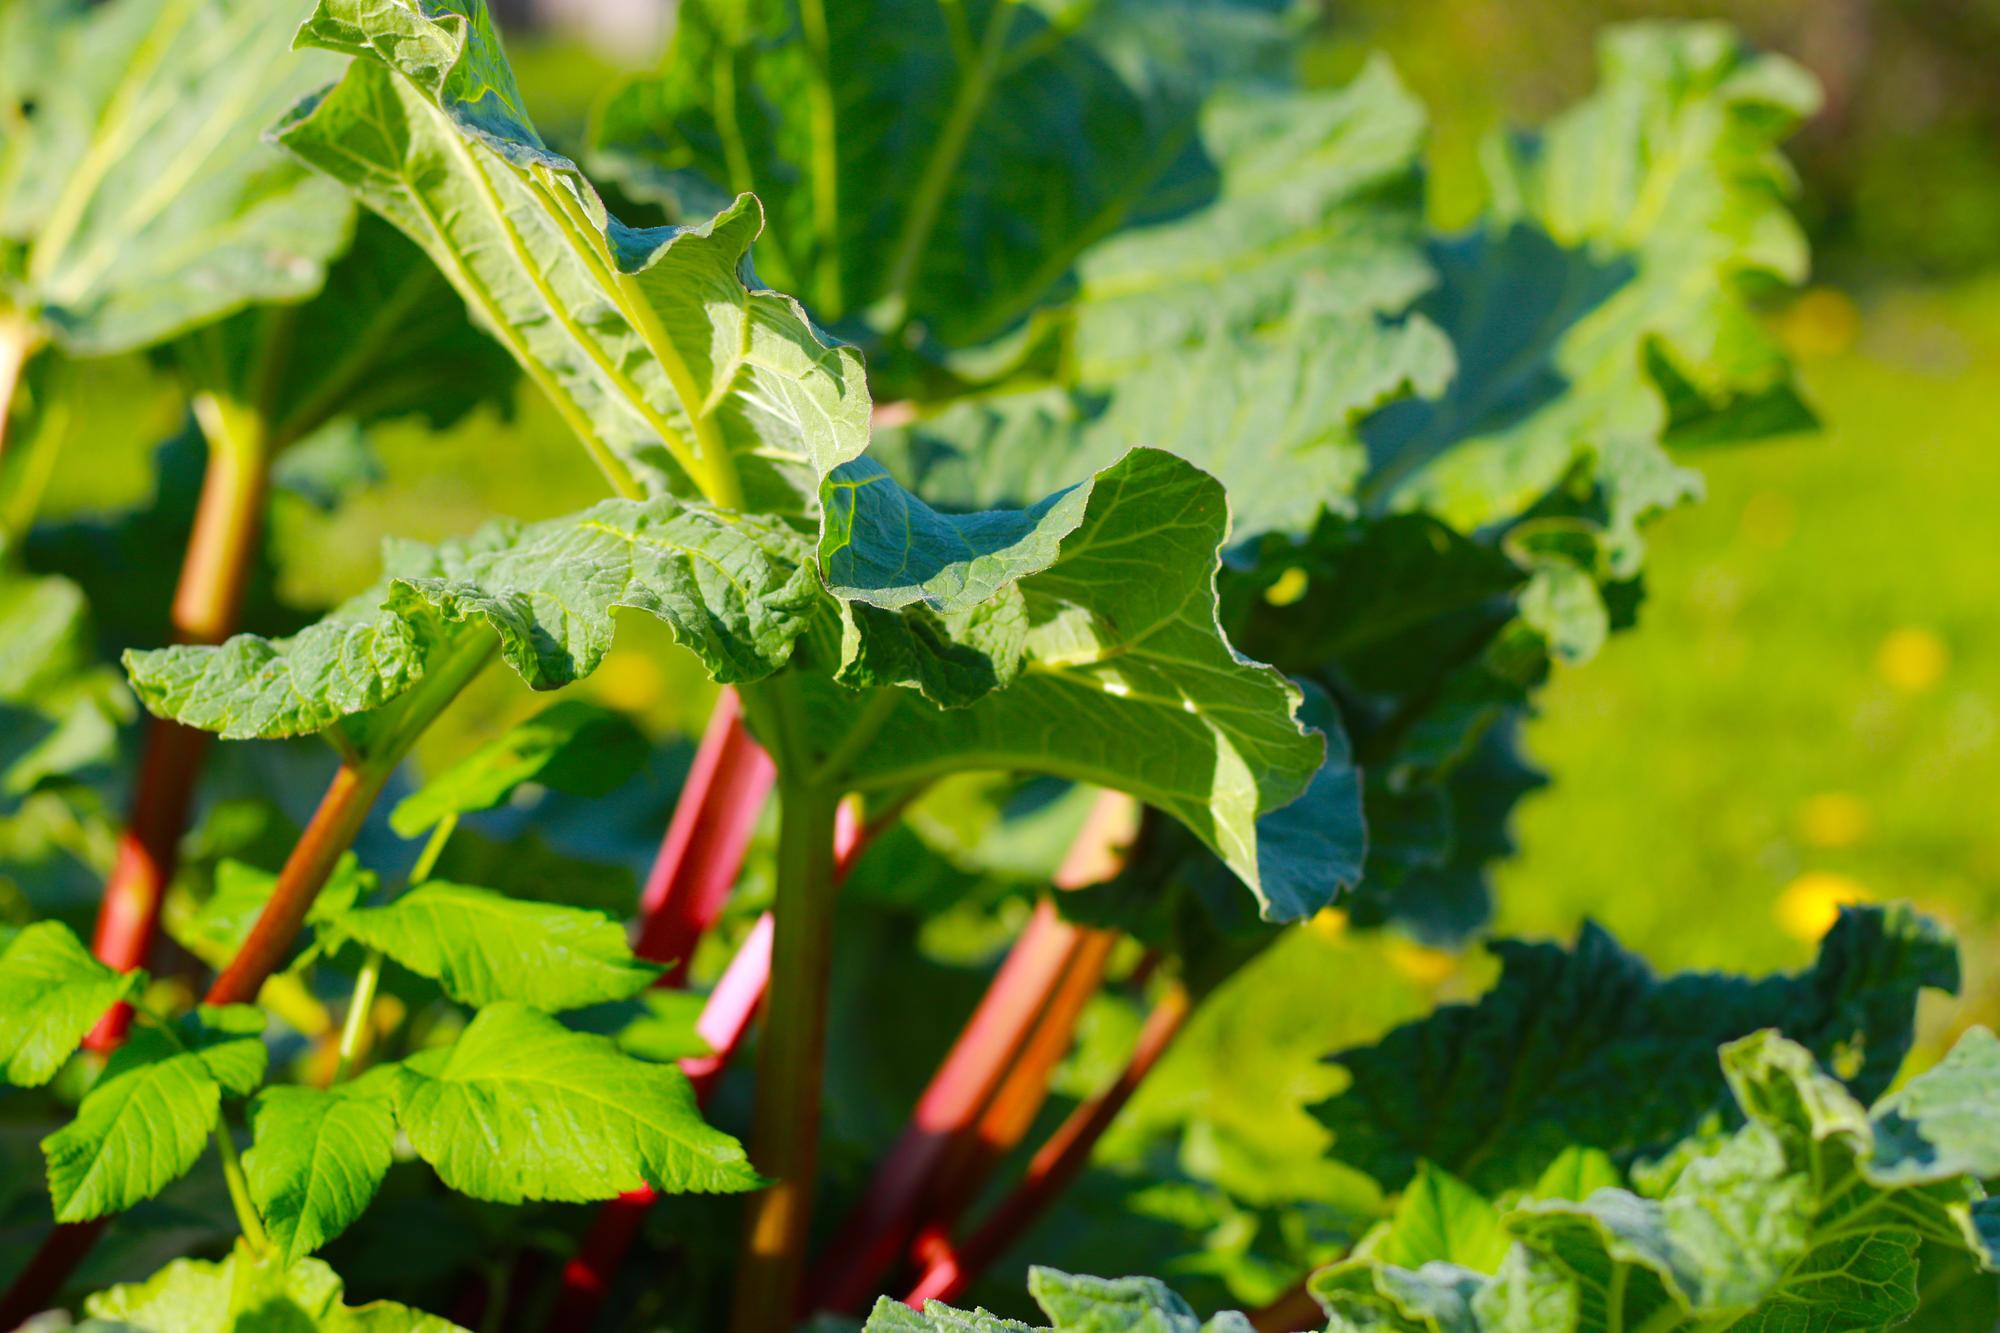 13 of the Best Rhubarb Varieties